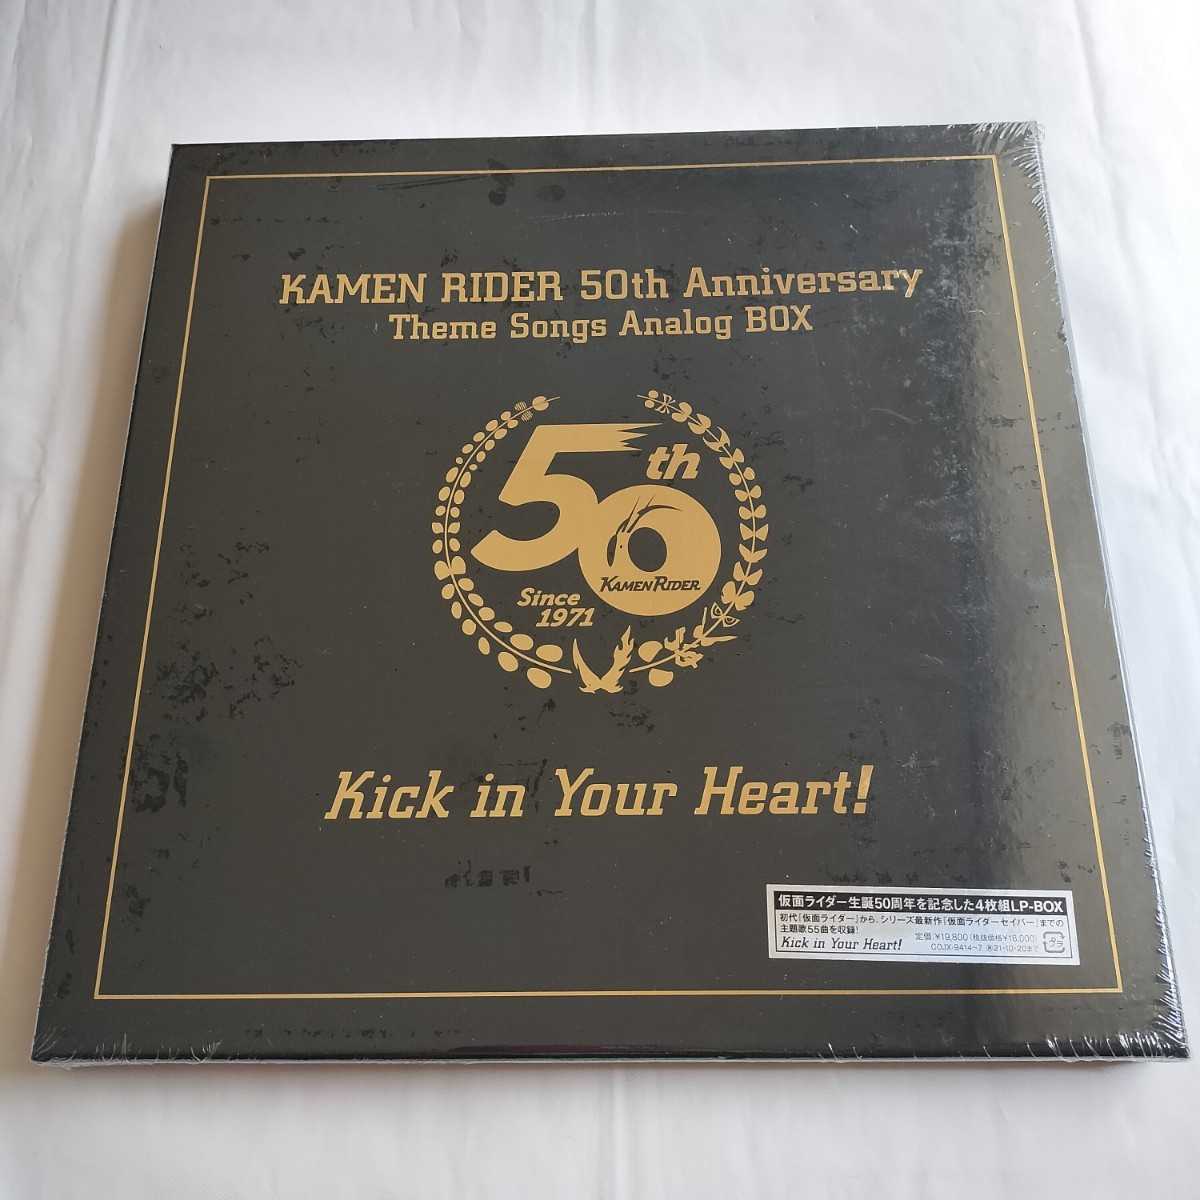 [ новый товар ] Kamen Rider сырой .50 anniversary commemoration Kamen Rider LP-BOX Kick in Your Heart! совершенно производство ограничение запись аналог запись аналог запись 